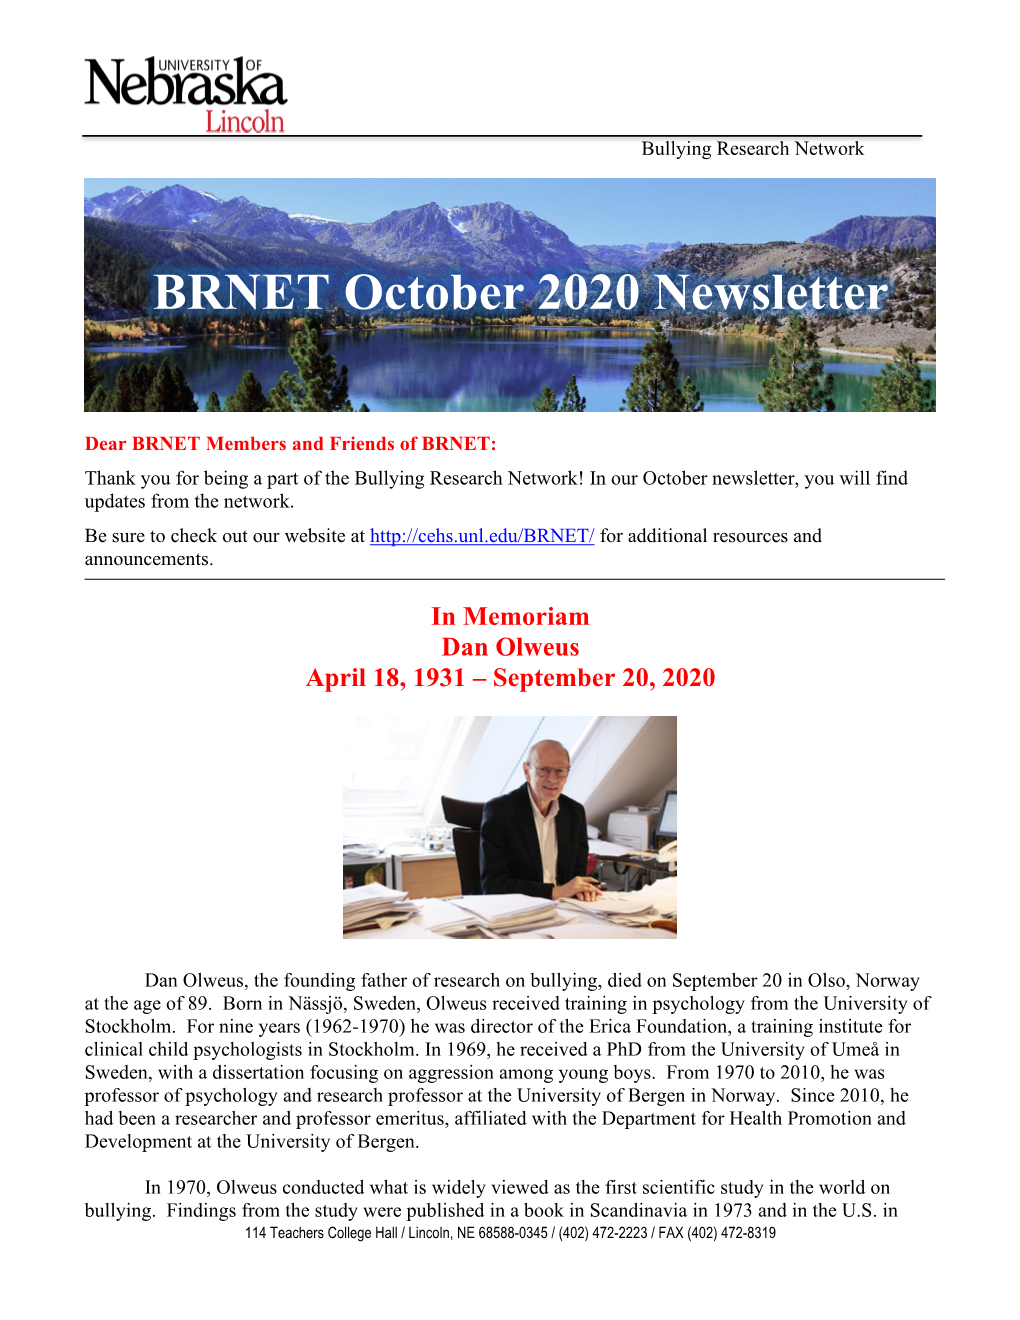 BRNET October 2020 Newsletter